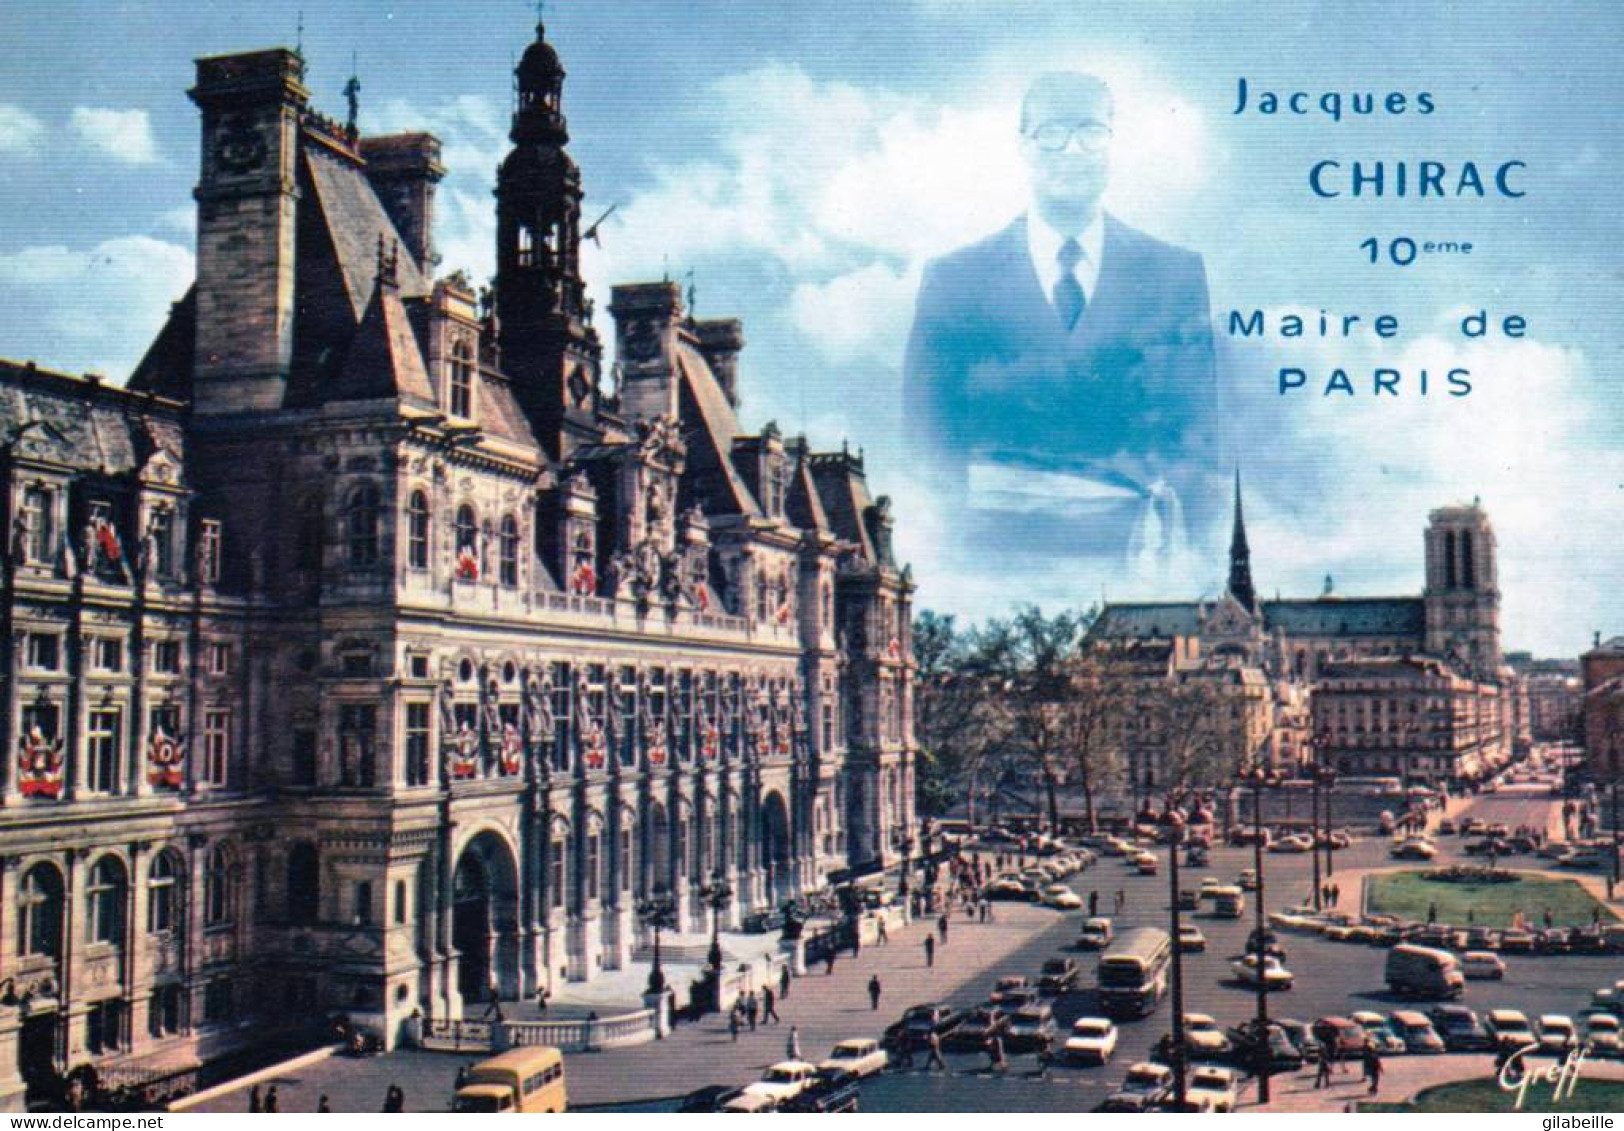 Politique - Jacques Chirac - 10eme Maire De Paris - People